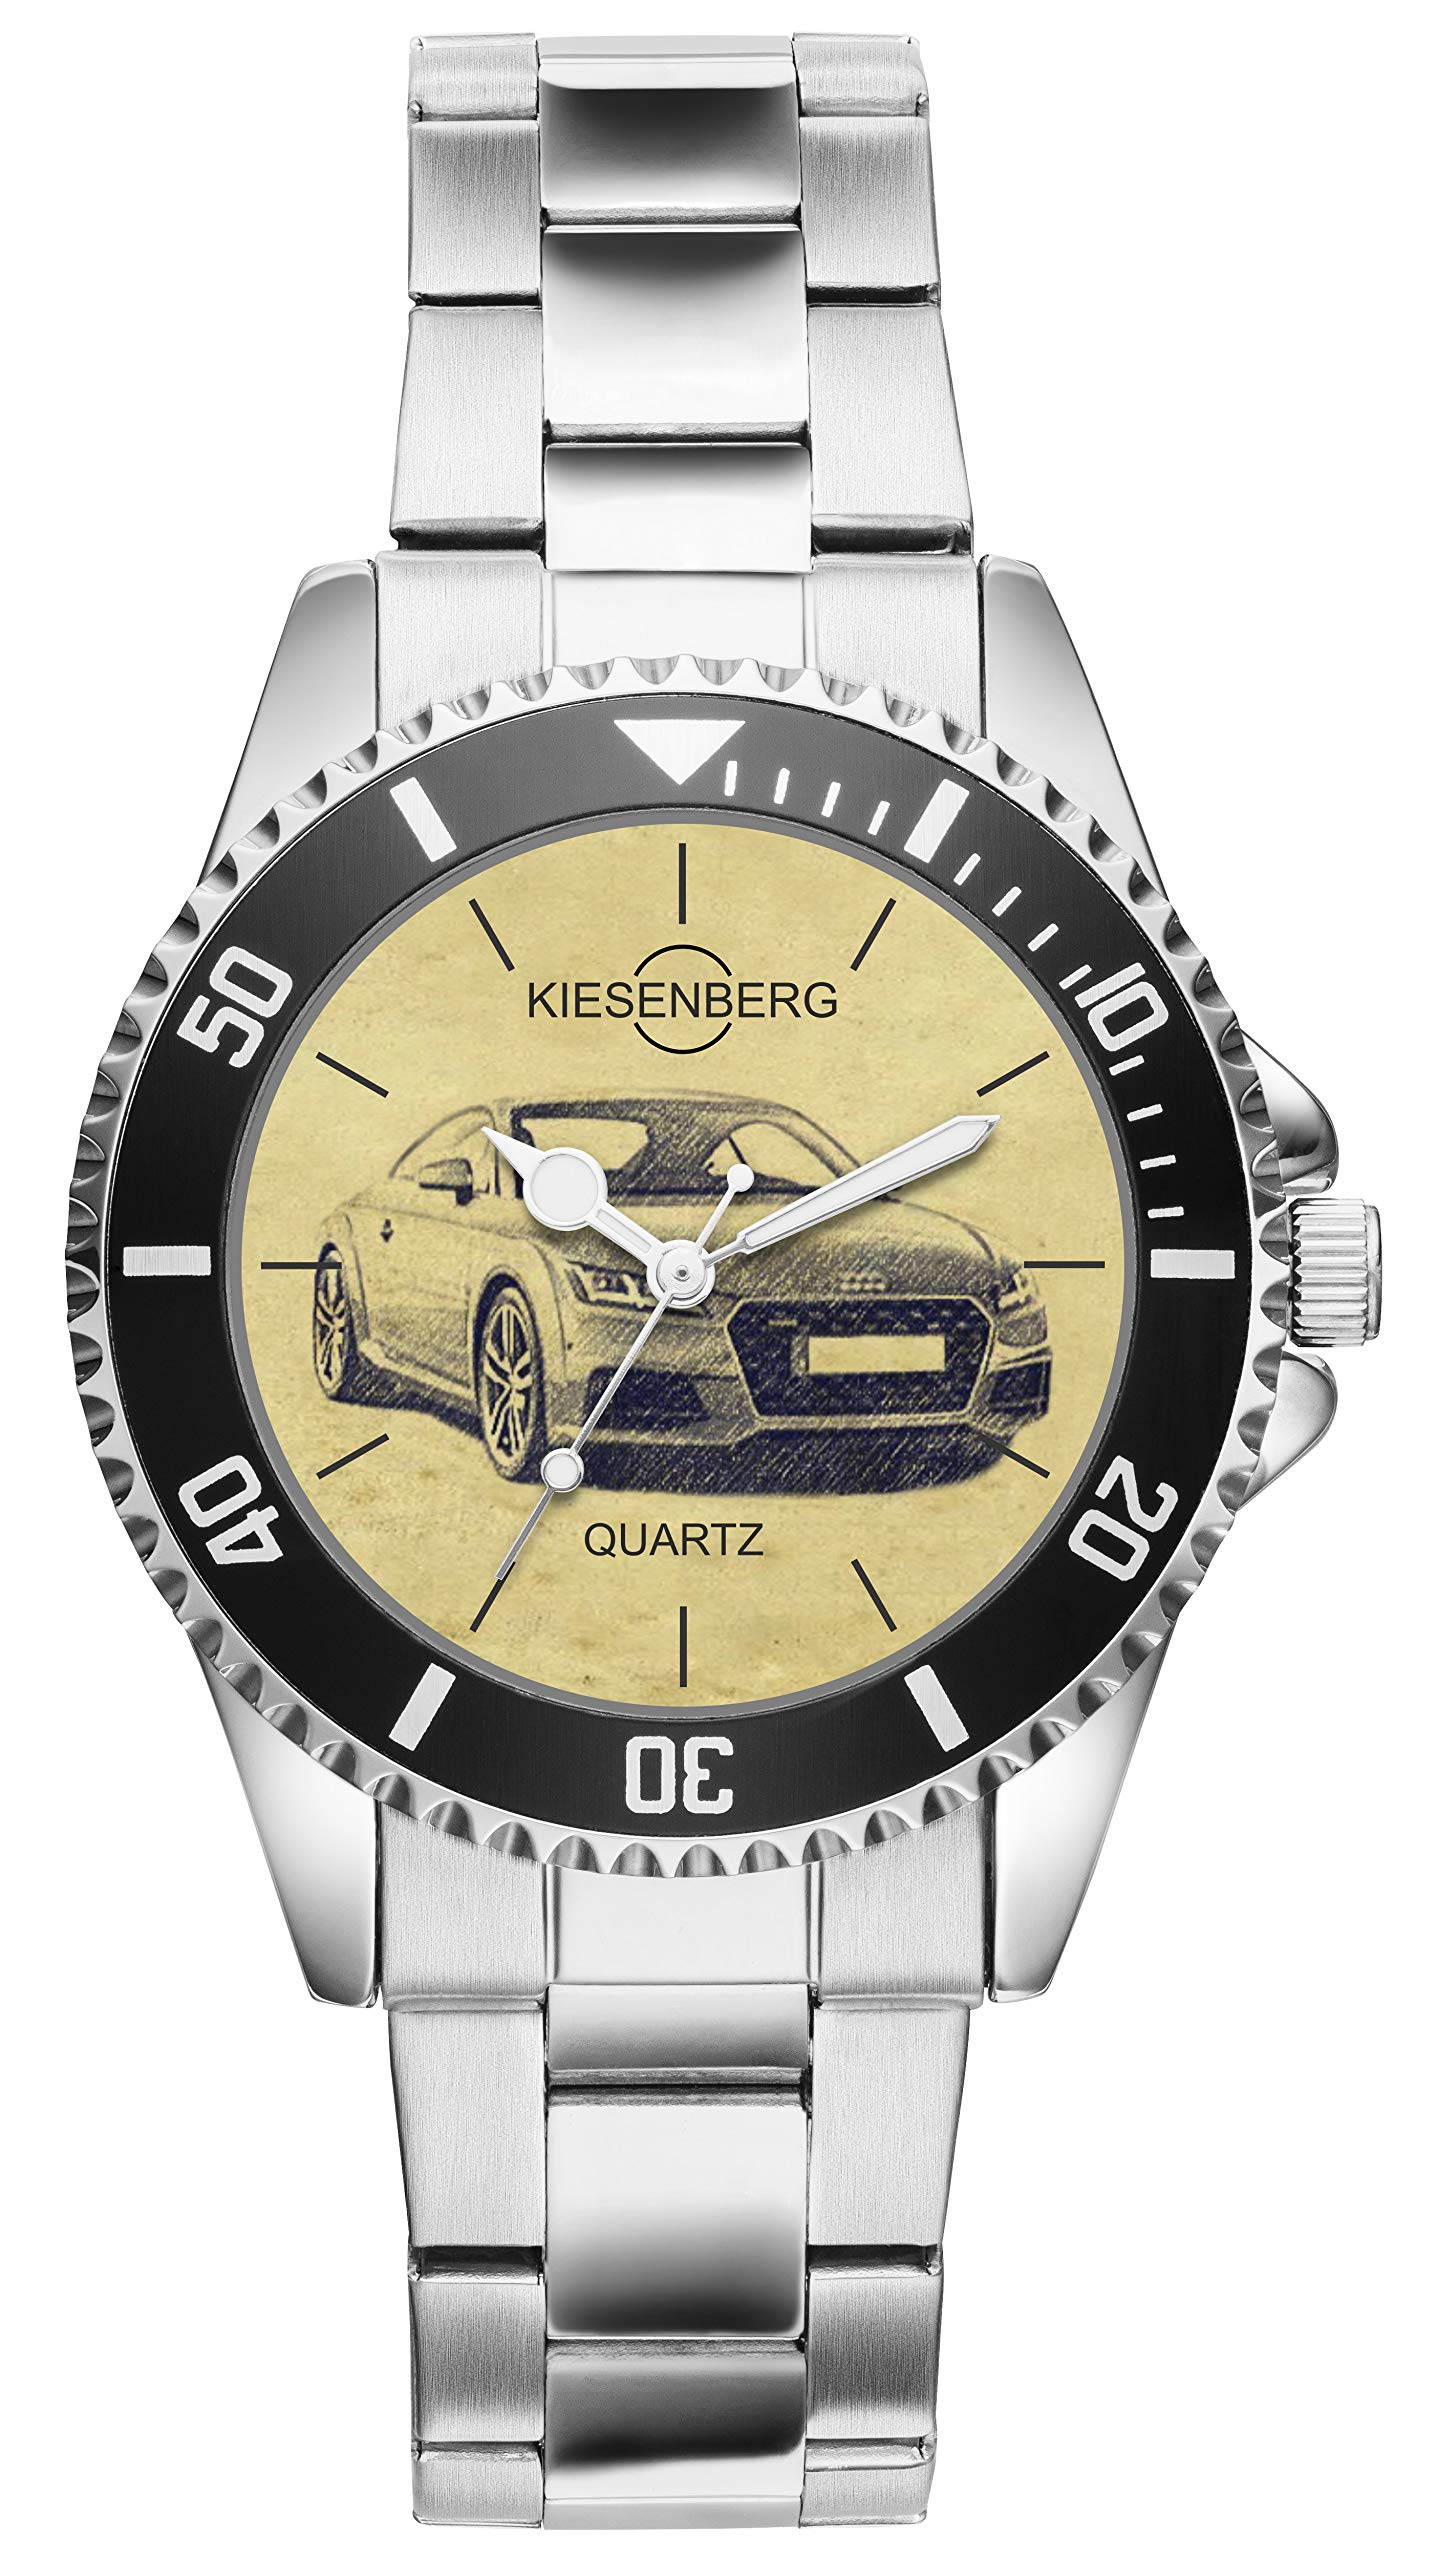 KIESENBERG Uhr - Geschenke für TT 8S Coupe Modellpflege Fan 5125 von KIESENBERG